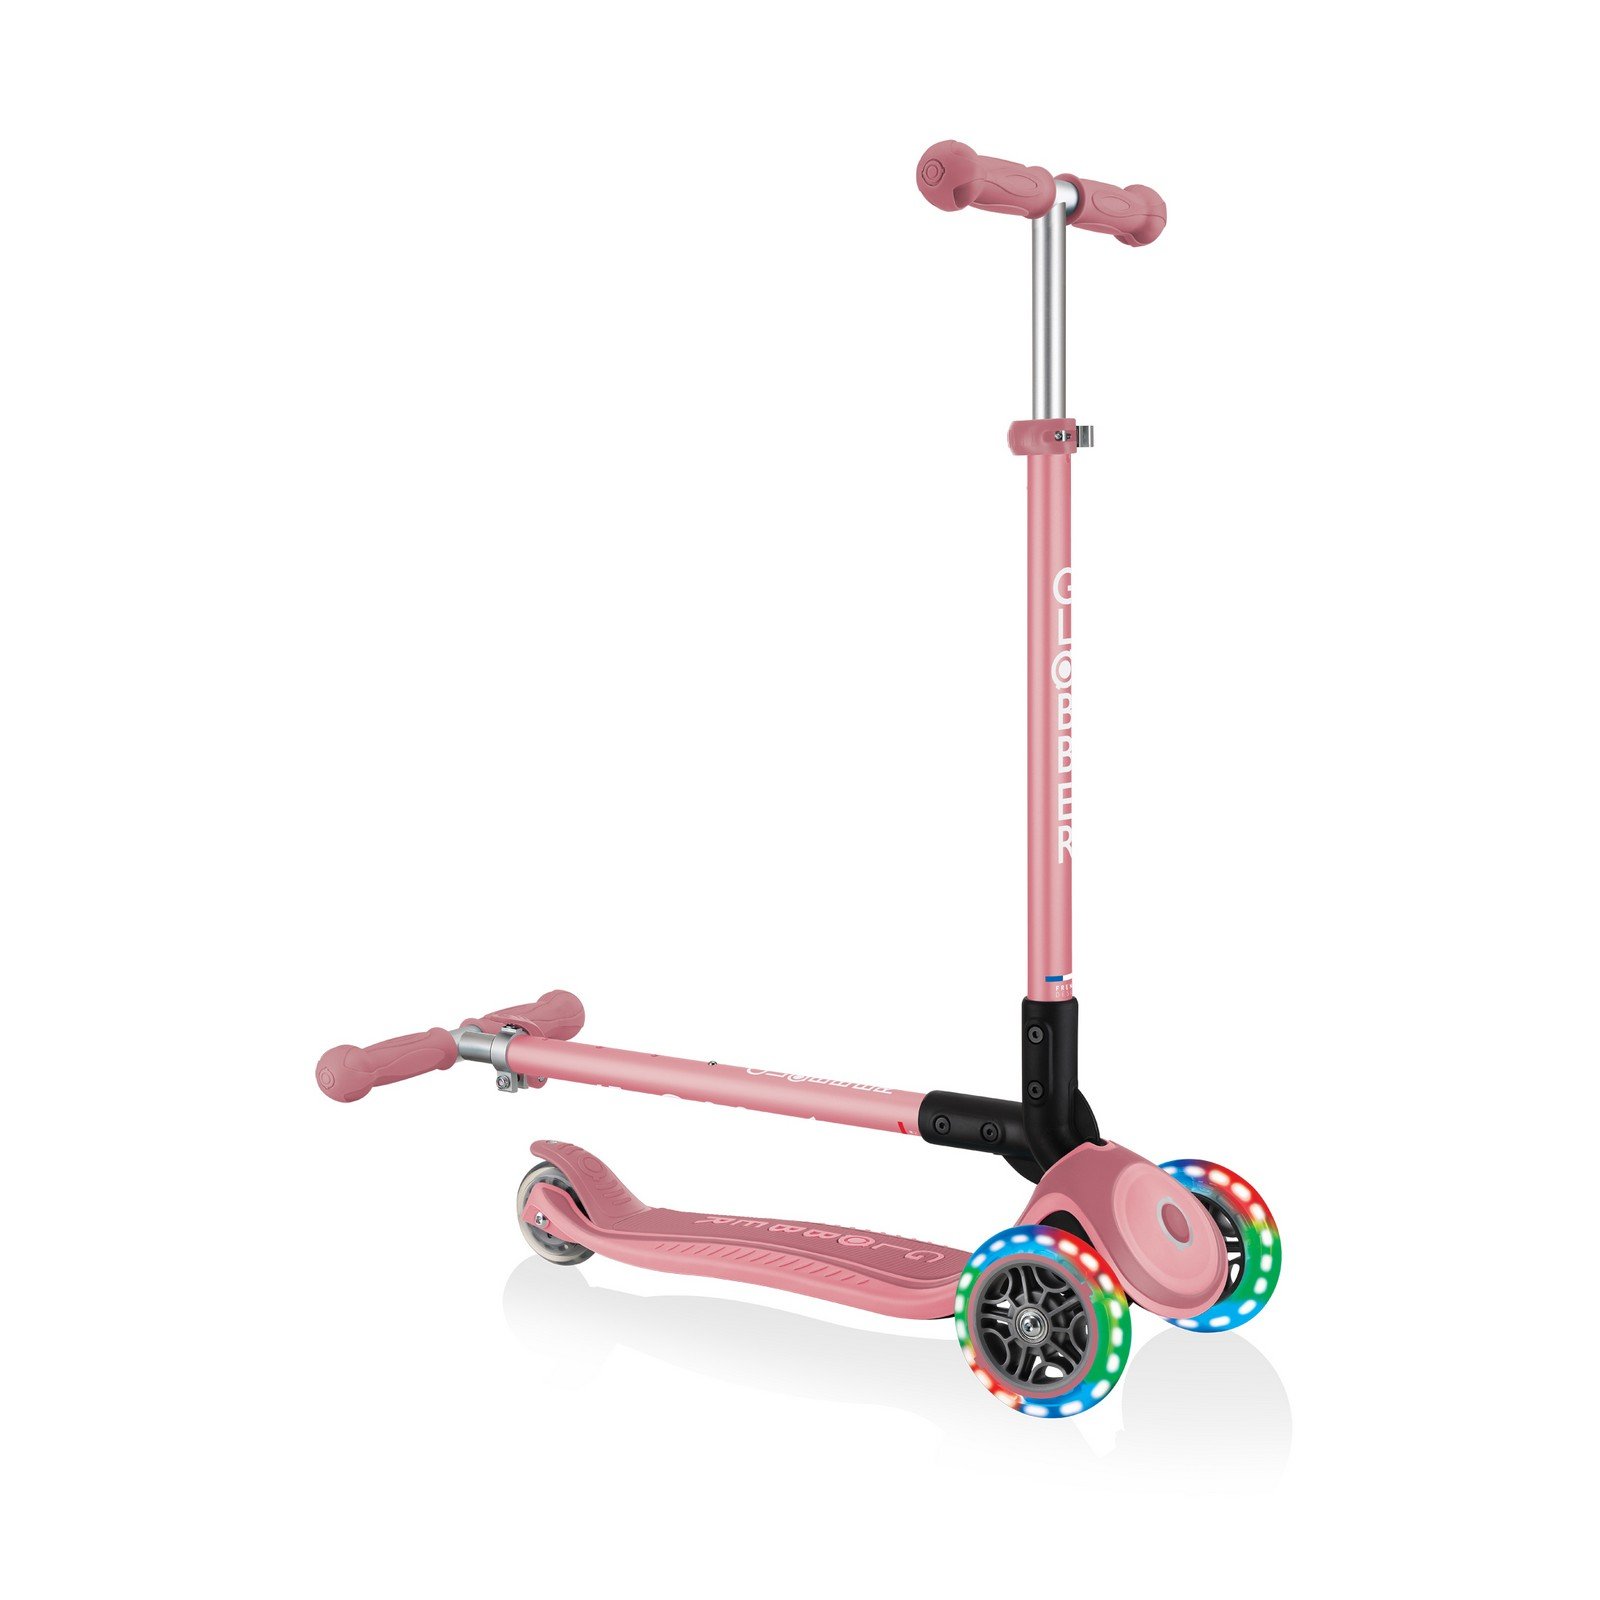 Самокат Globber Primo foldable plus lights, колеса с подсветкой, пастельно-розовый (439-210) - фото 8